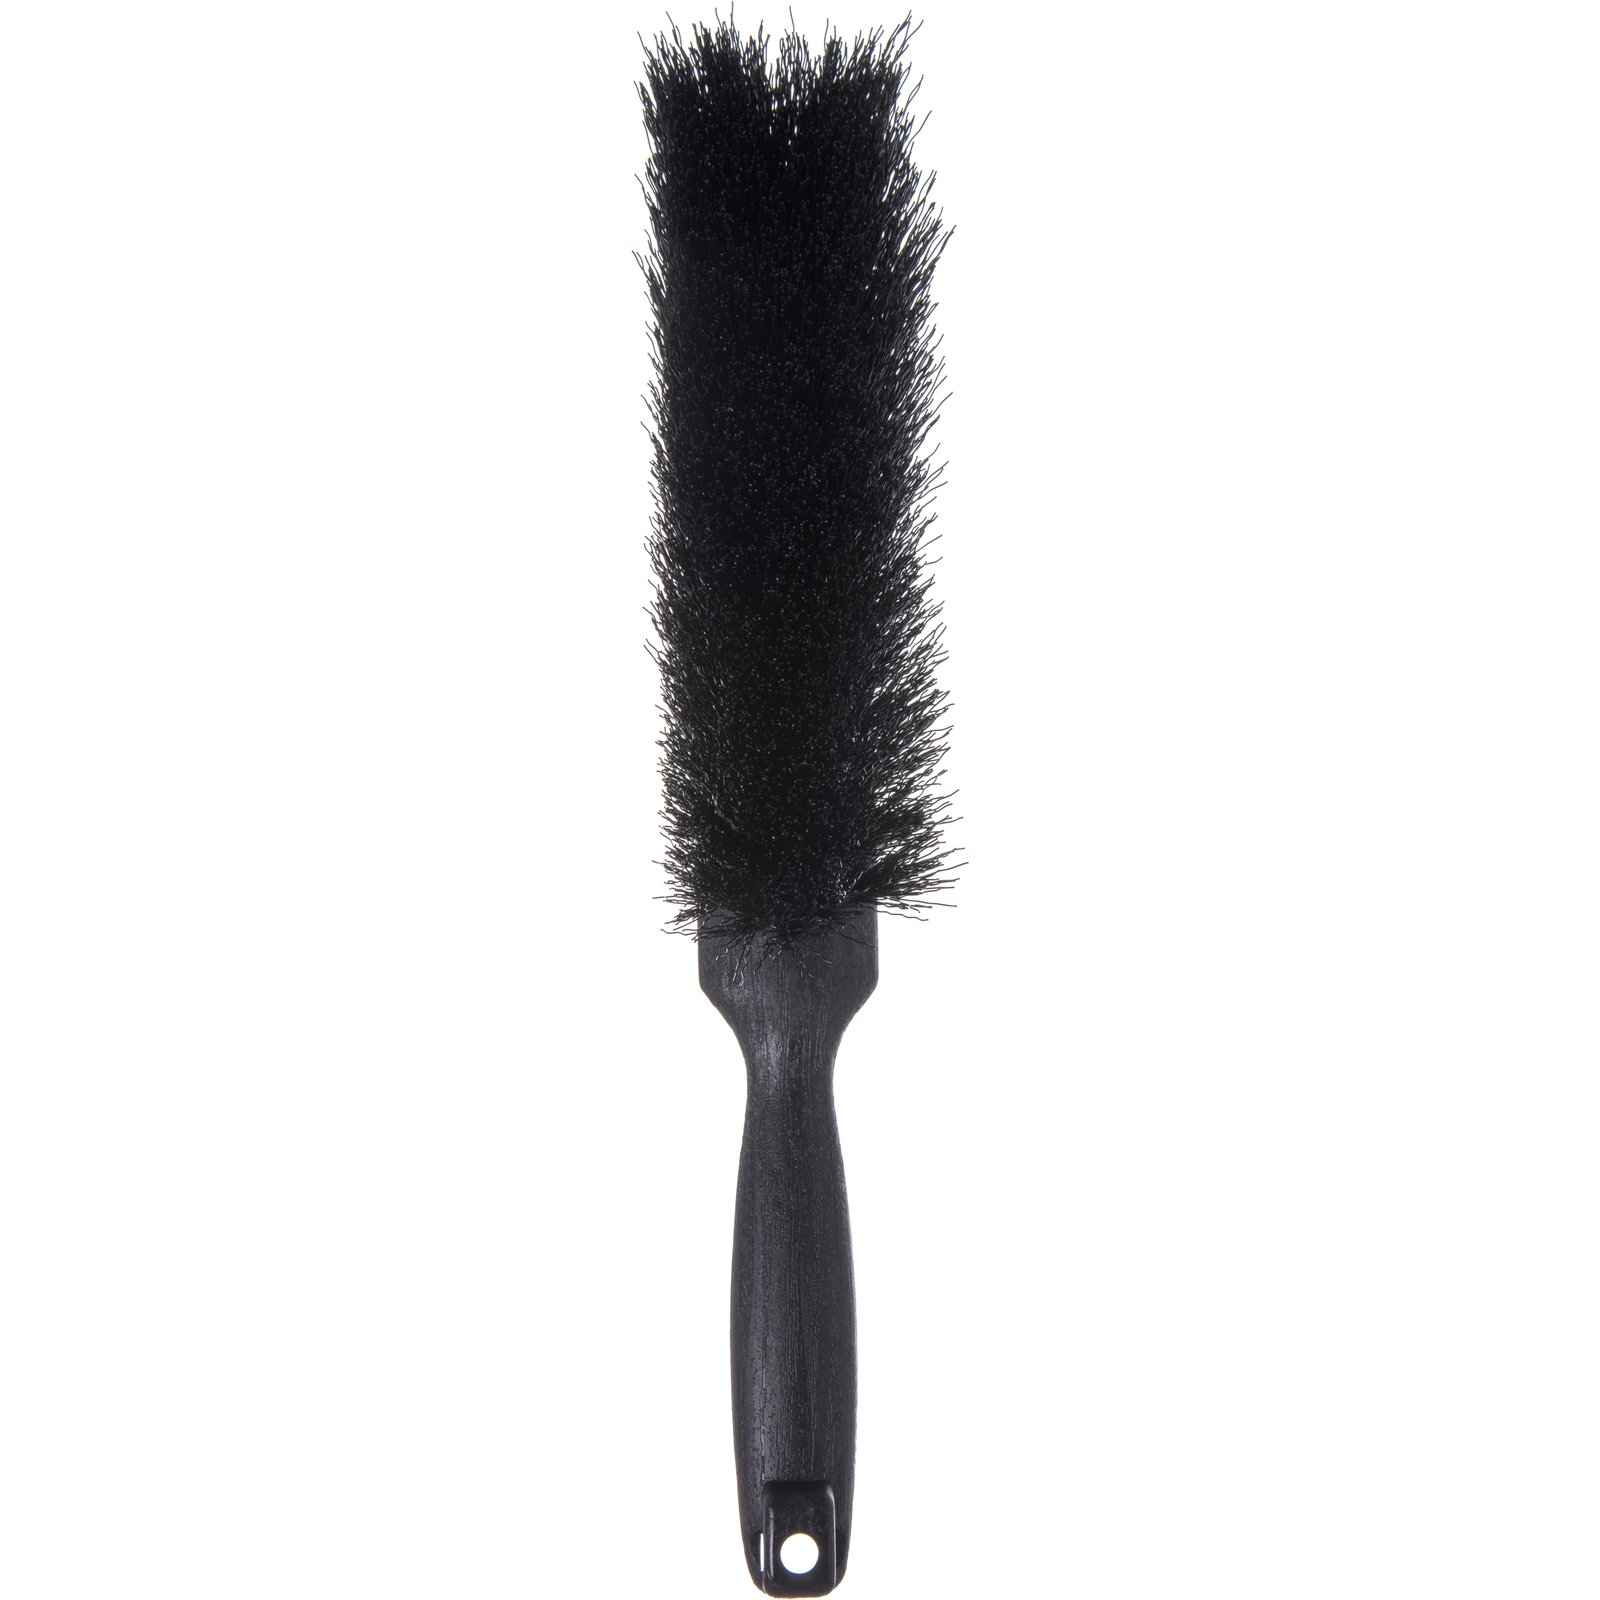 PB 381036 19 .018/500 Soft Scrub Brush - Our # PB 381036